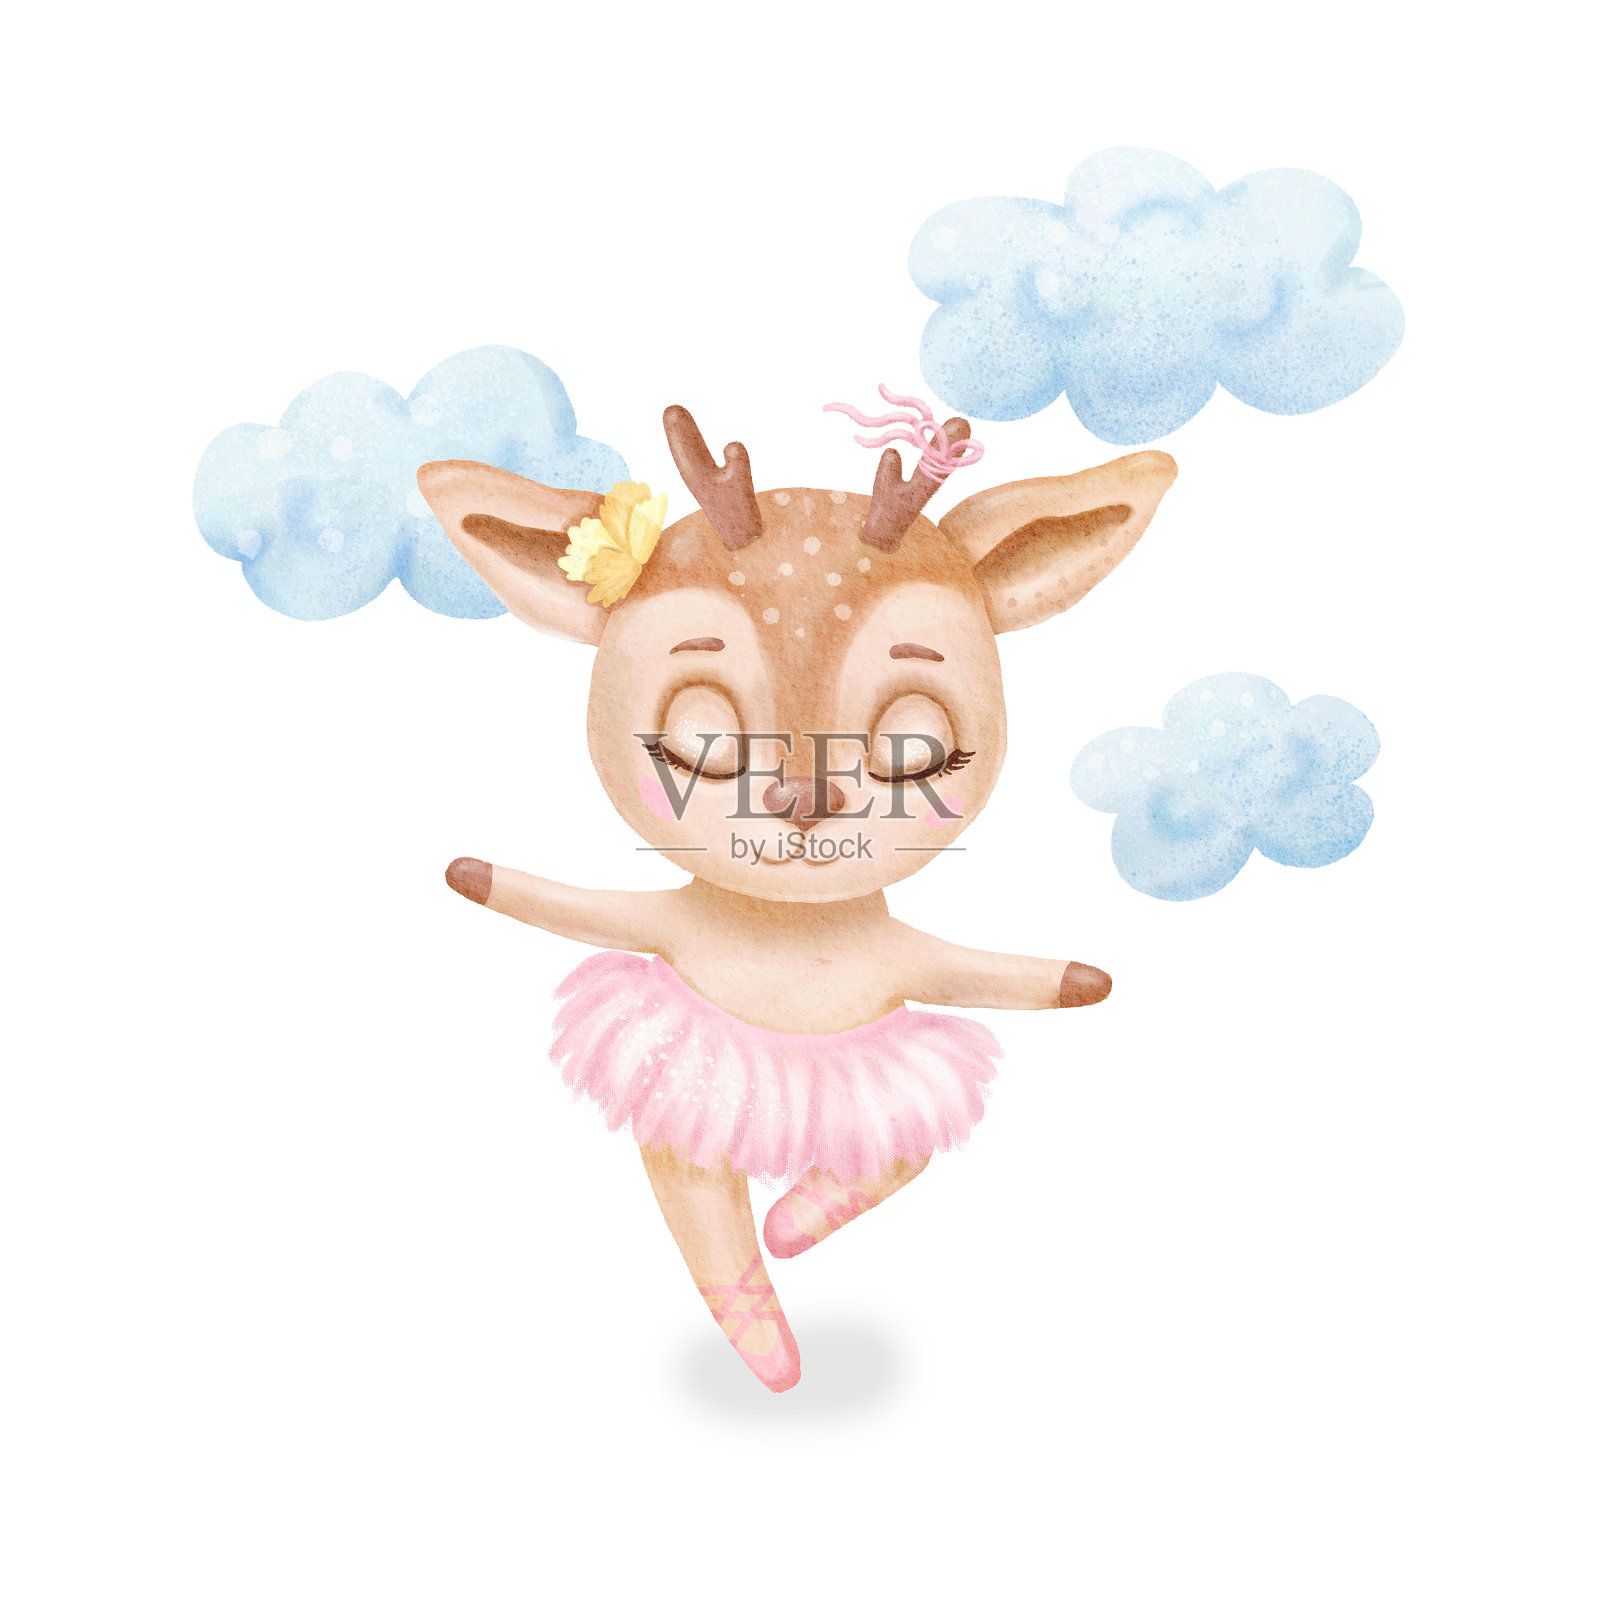 水彩画芭蕾舞小鹿。婴儿印花或海报。手绘可爱插画当代艺术设计元素图片